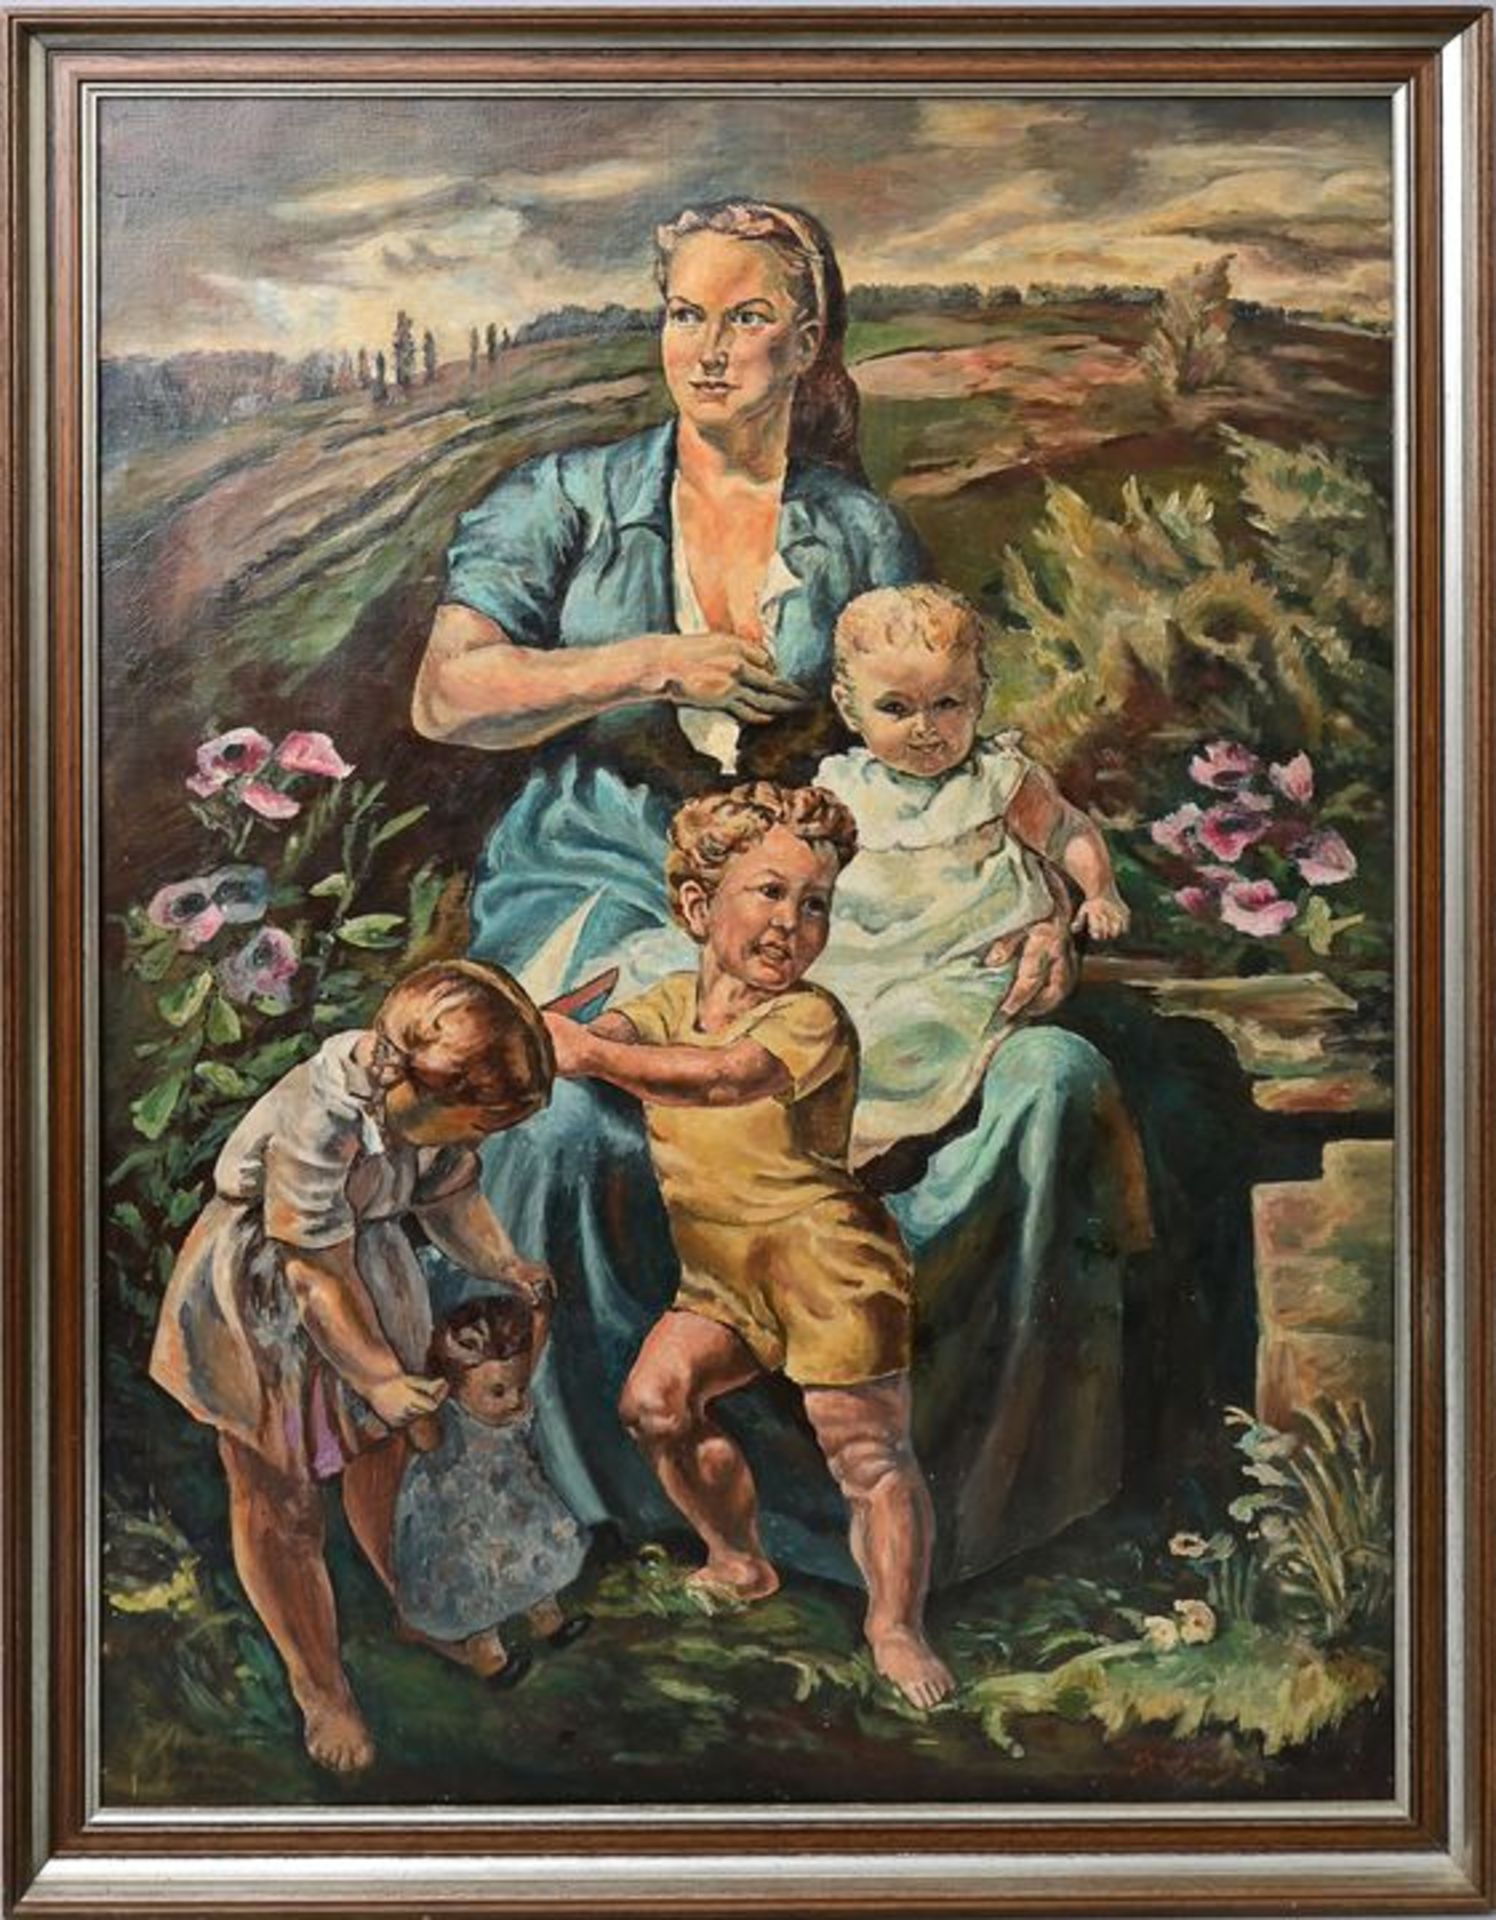 Kopie nach Heymann, Richard "In sicherer Hut" / copy after Heymann, Family portrait - Image 4 of 7